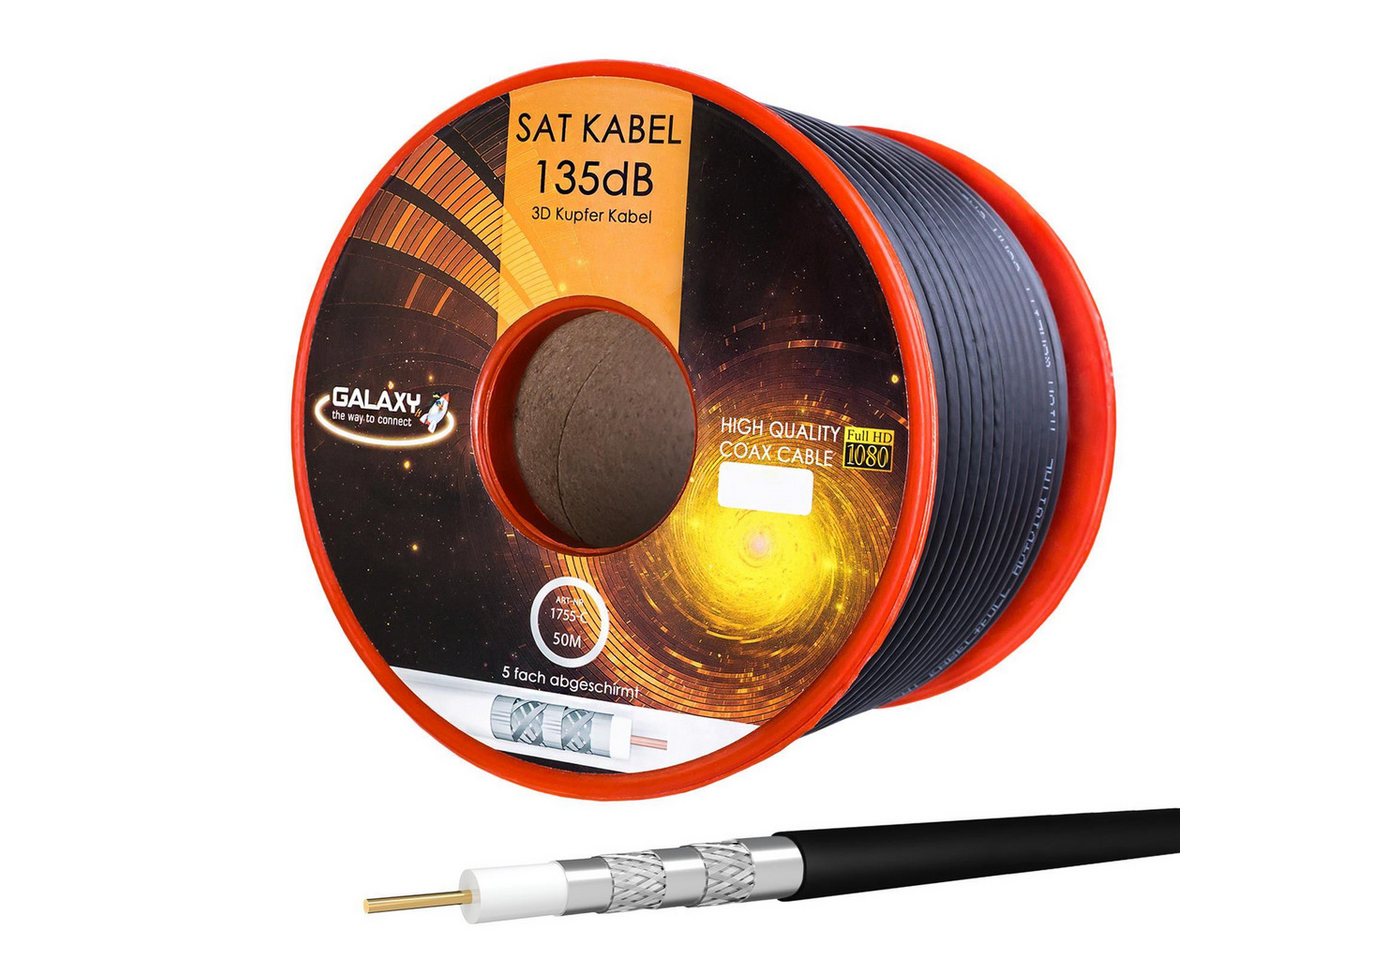 HB-DIGITAL Koax Kabel 50m Galaxy 135dB 5-Fach Reines Kupfer SAT-Kabel, (5000 cm), UV-stabile, strapazierfähige Ummantelung von HB-DIGITAL